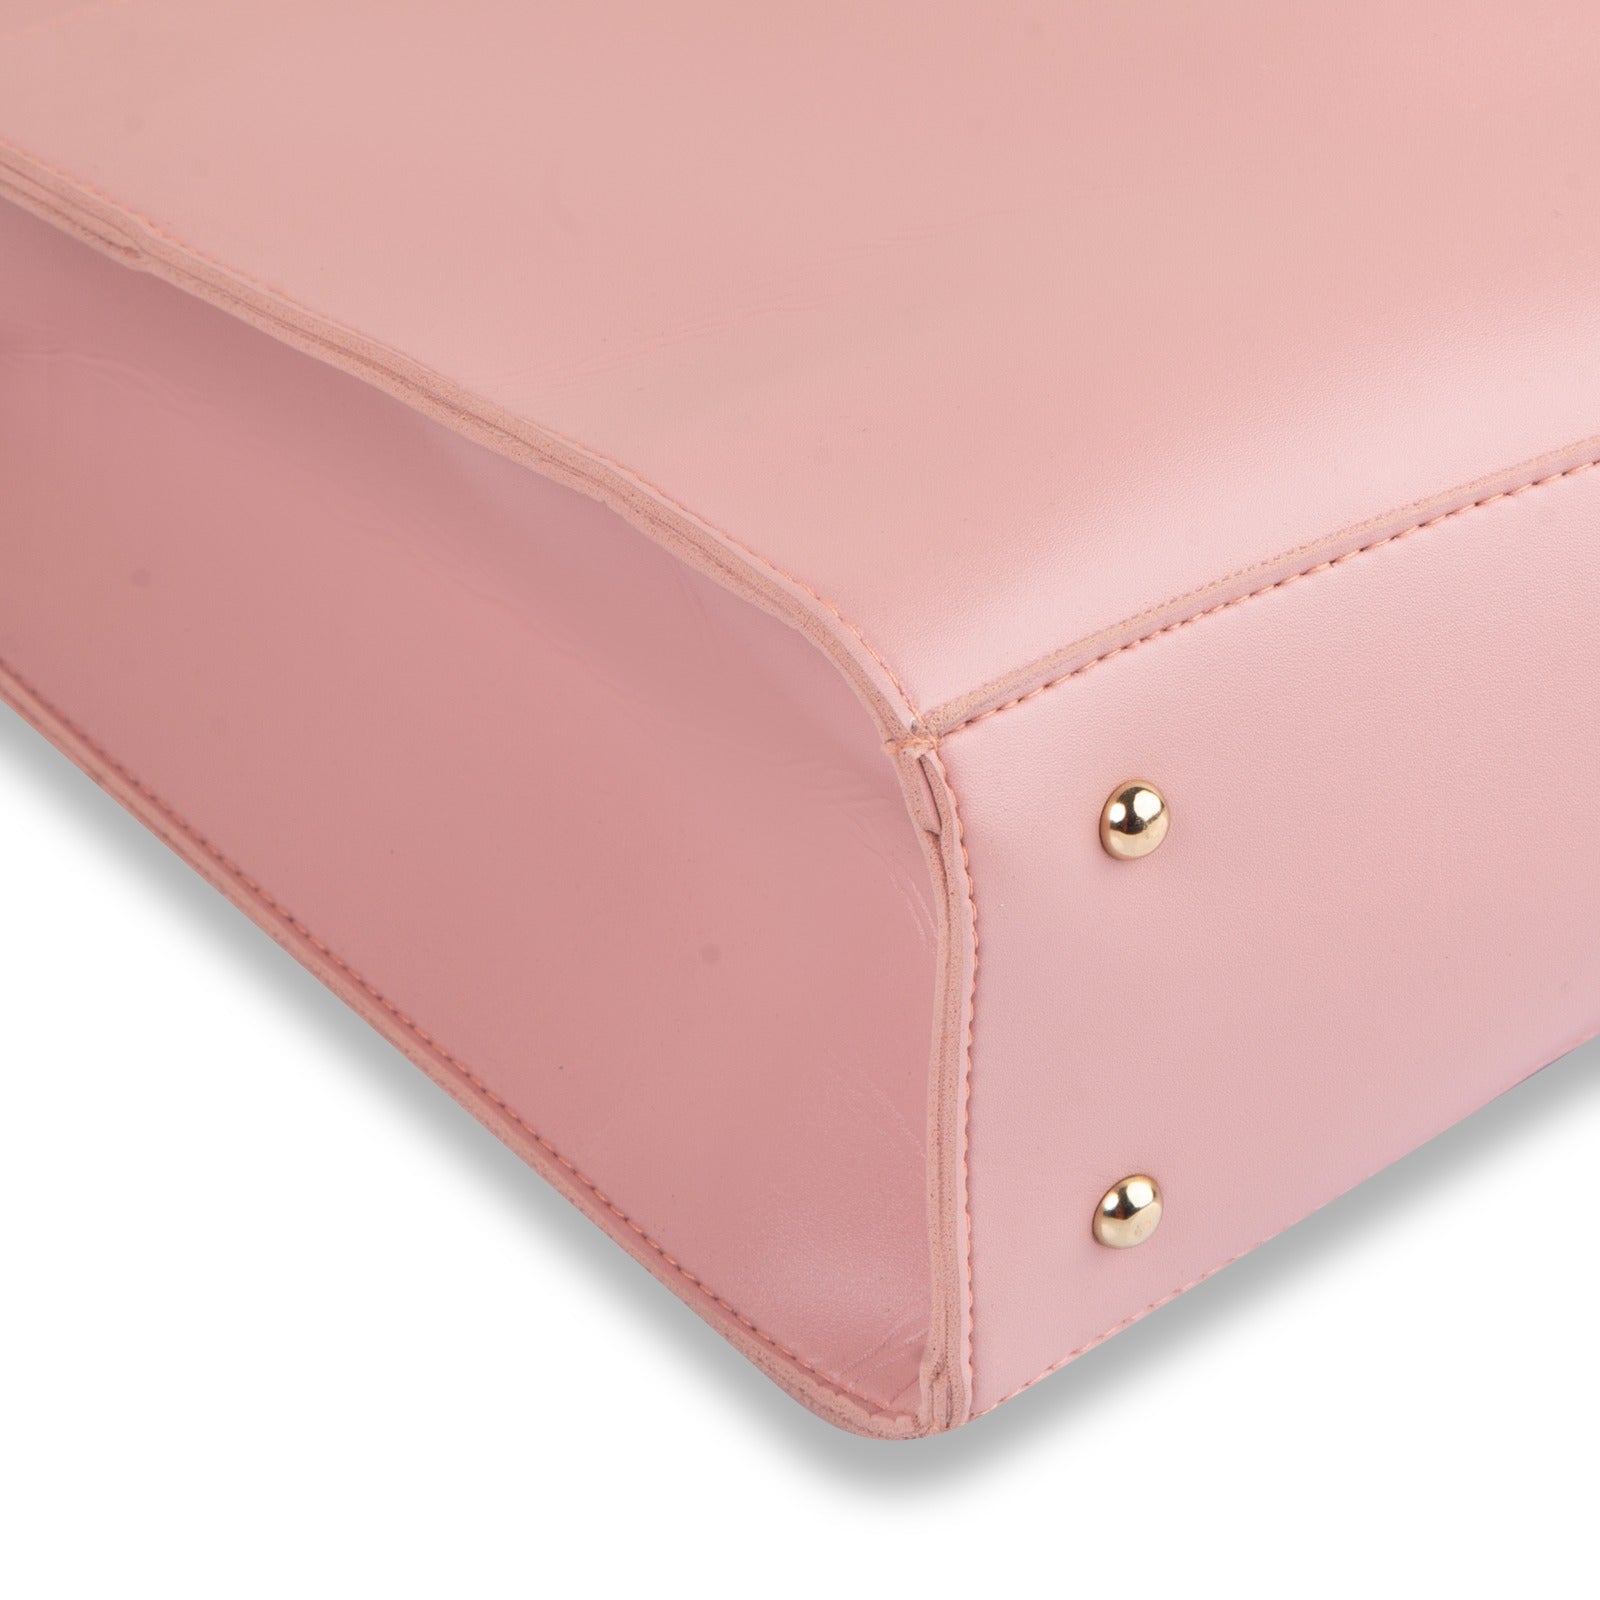 Daisy Pink Handbag